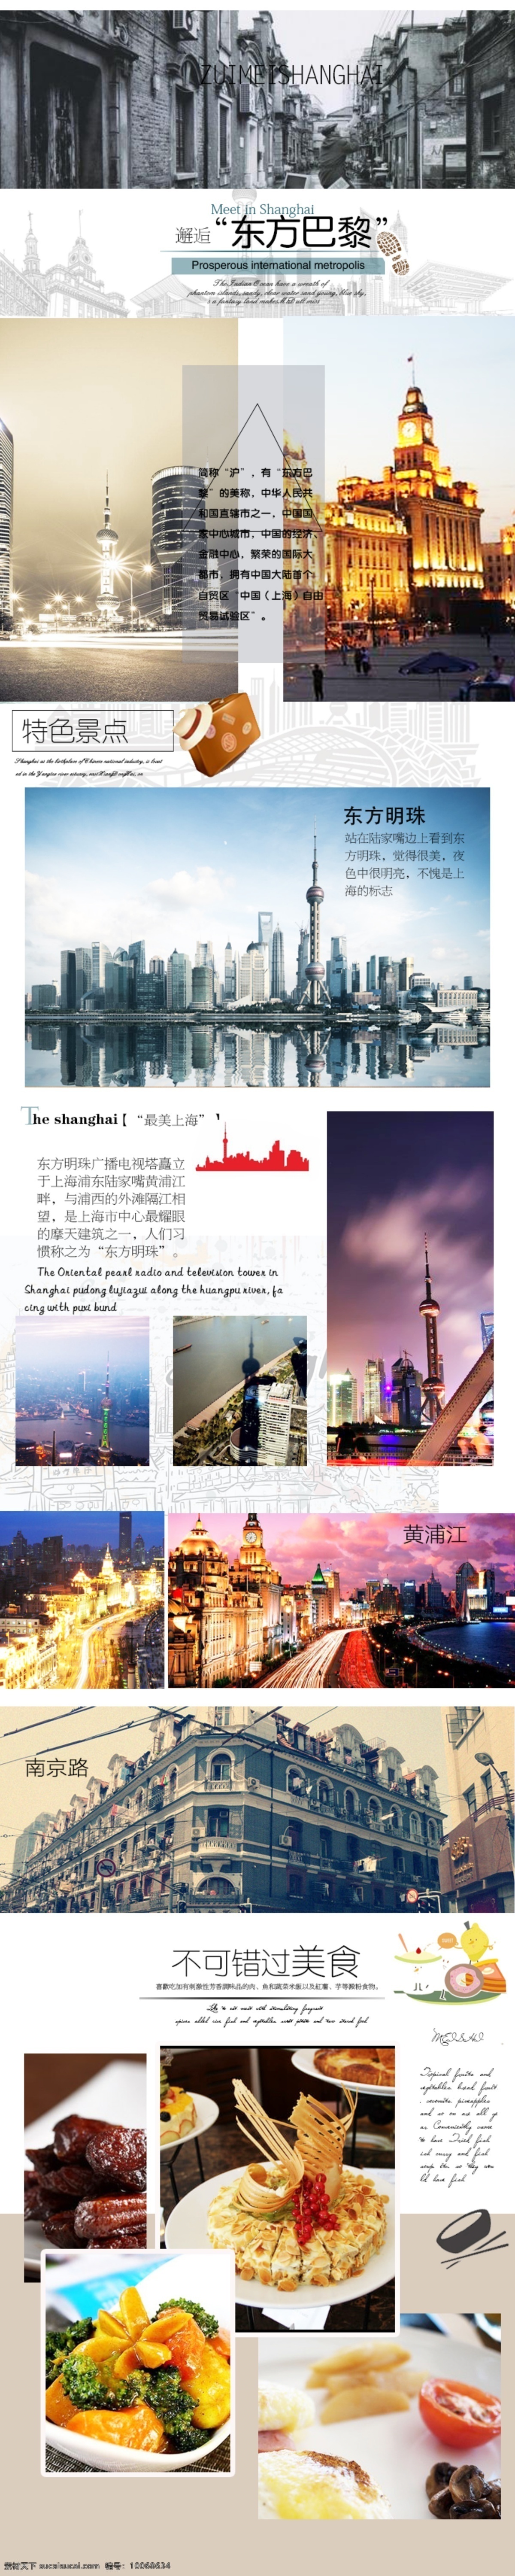 依据 上海 资料图片 排版 总结 东方明珠上海 主要景点 加上美食 psd源文件